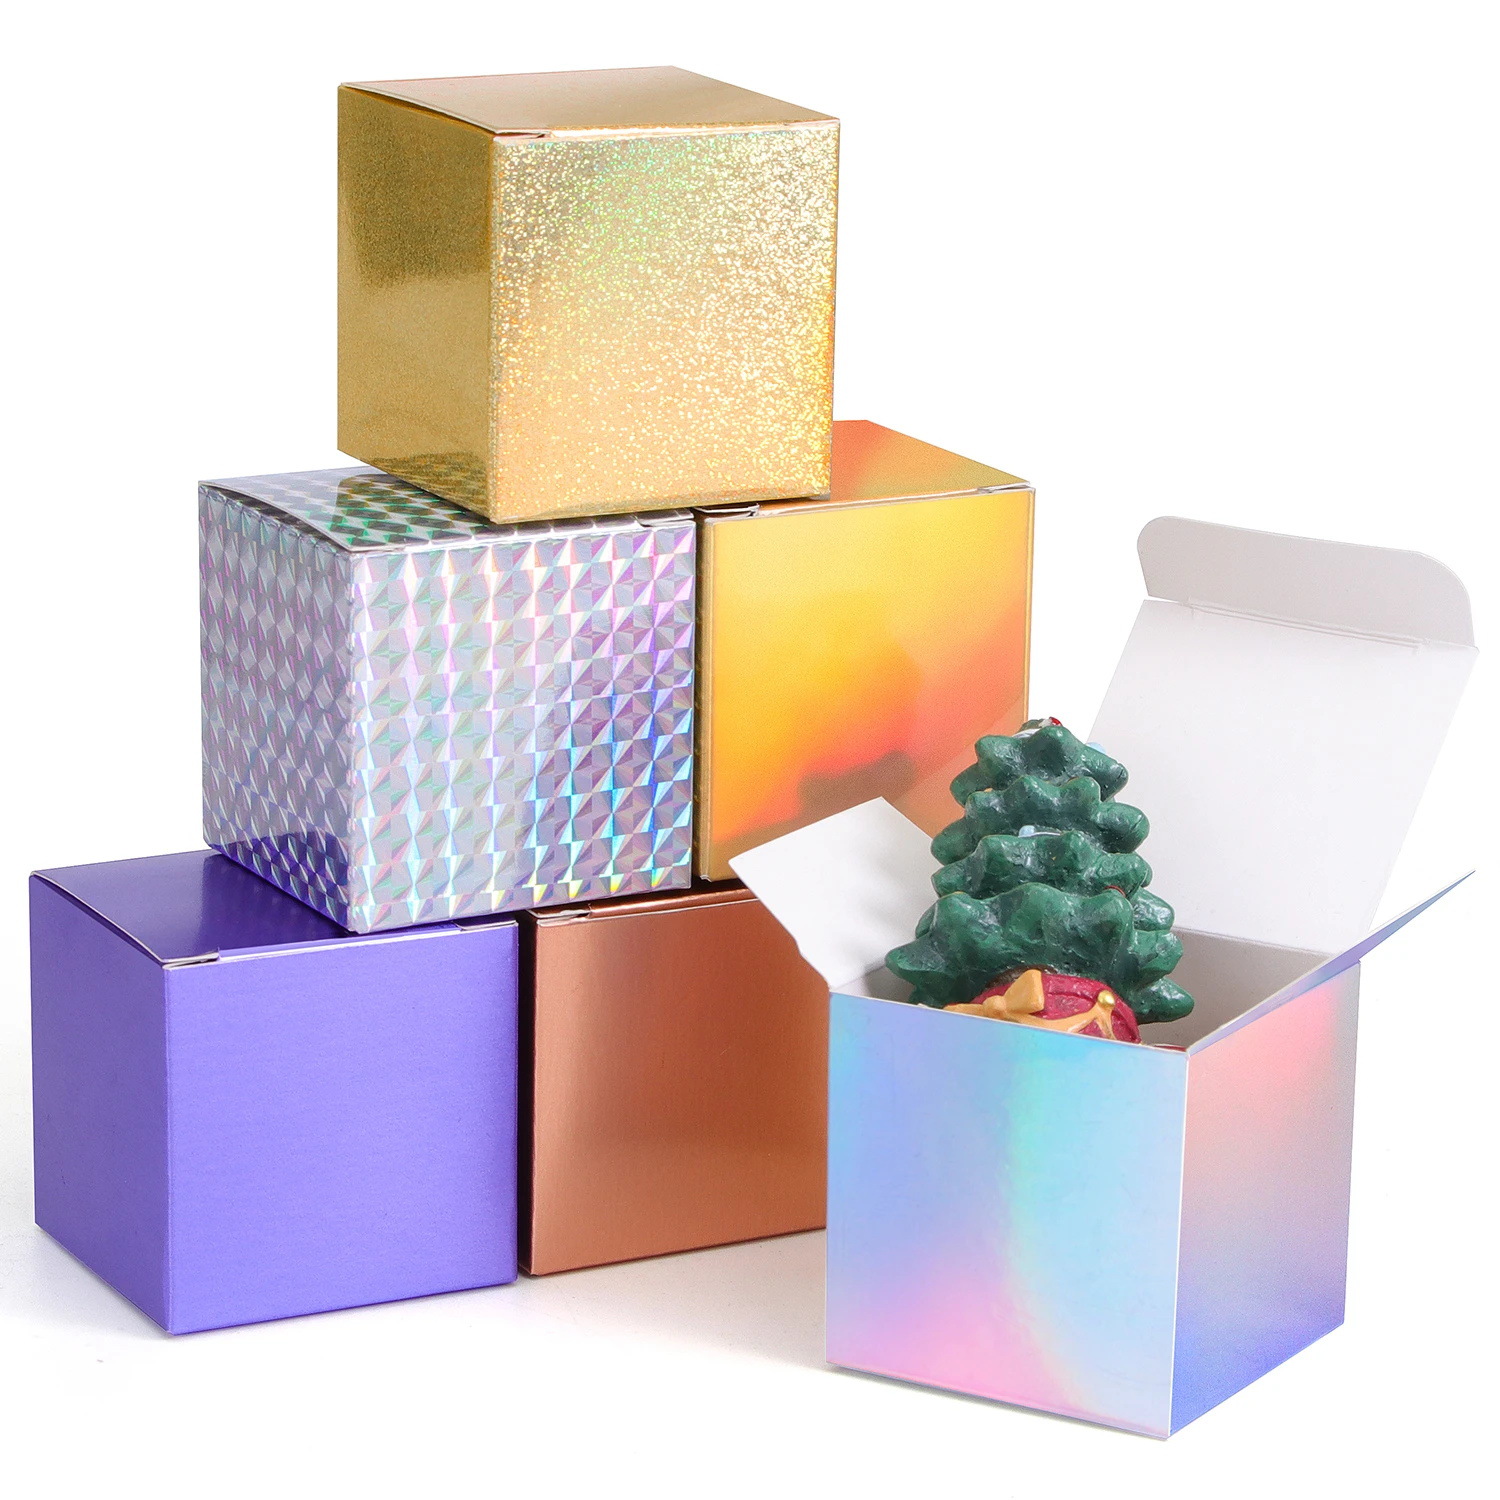 Square small paper box Candy box Mini gift candy aromatherapy box